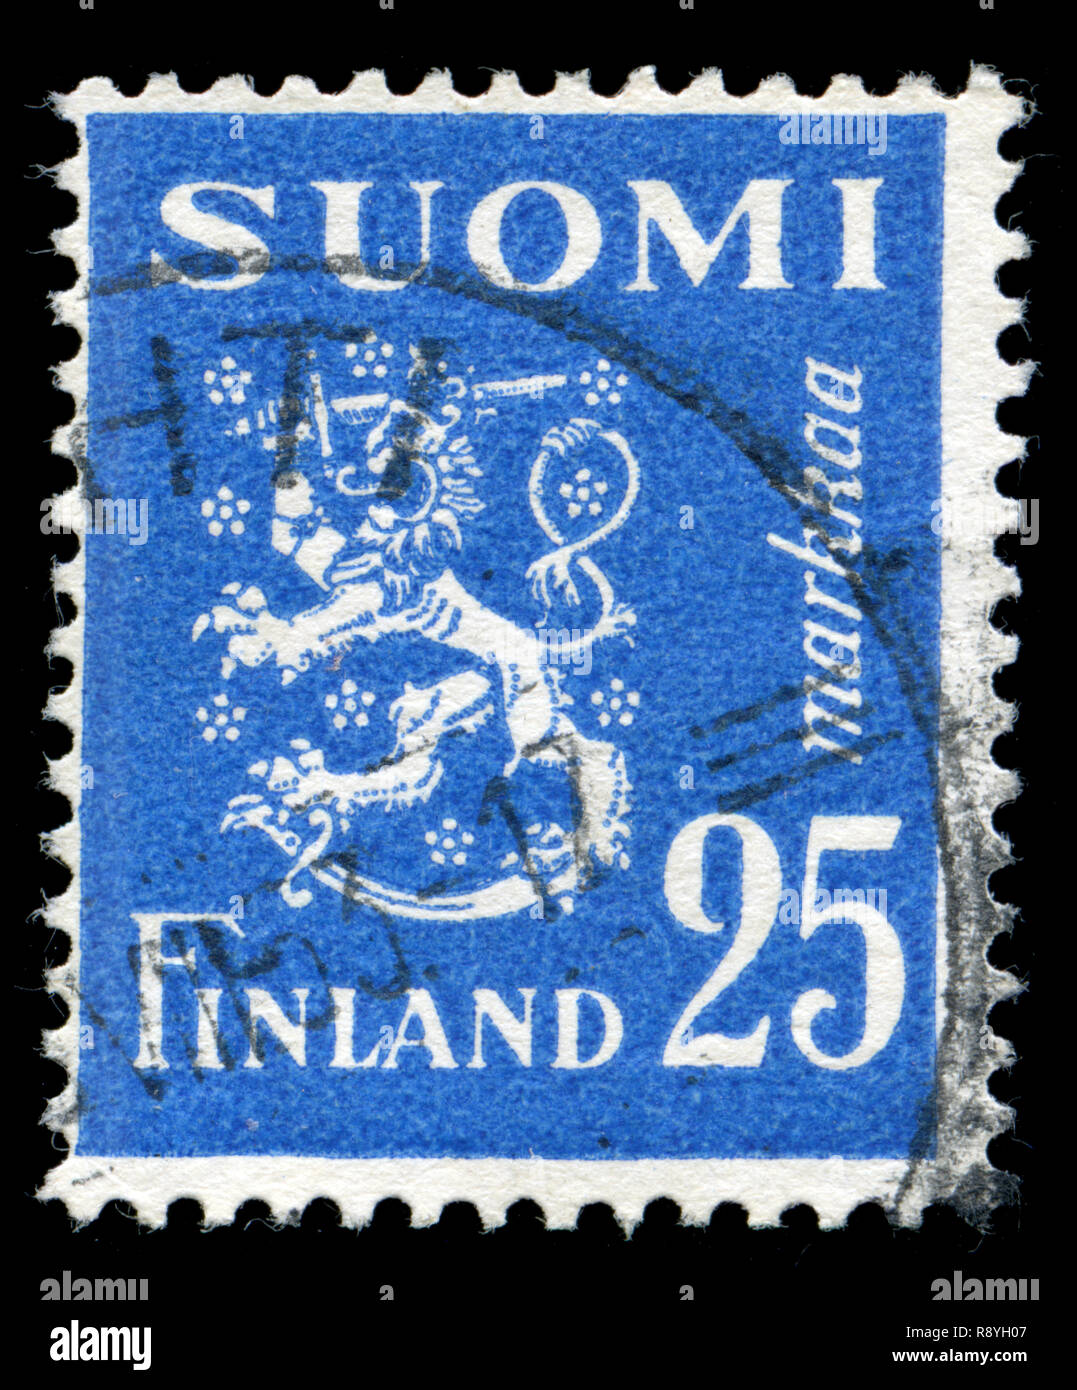 Timbre-poste de la Finlande dans le modèle 1930 Lion série émise en 1952 Banque D'Images